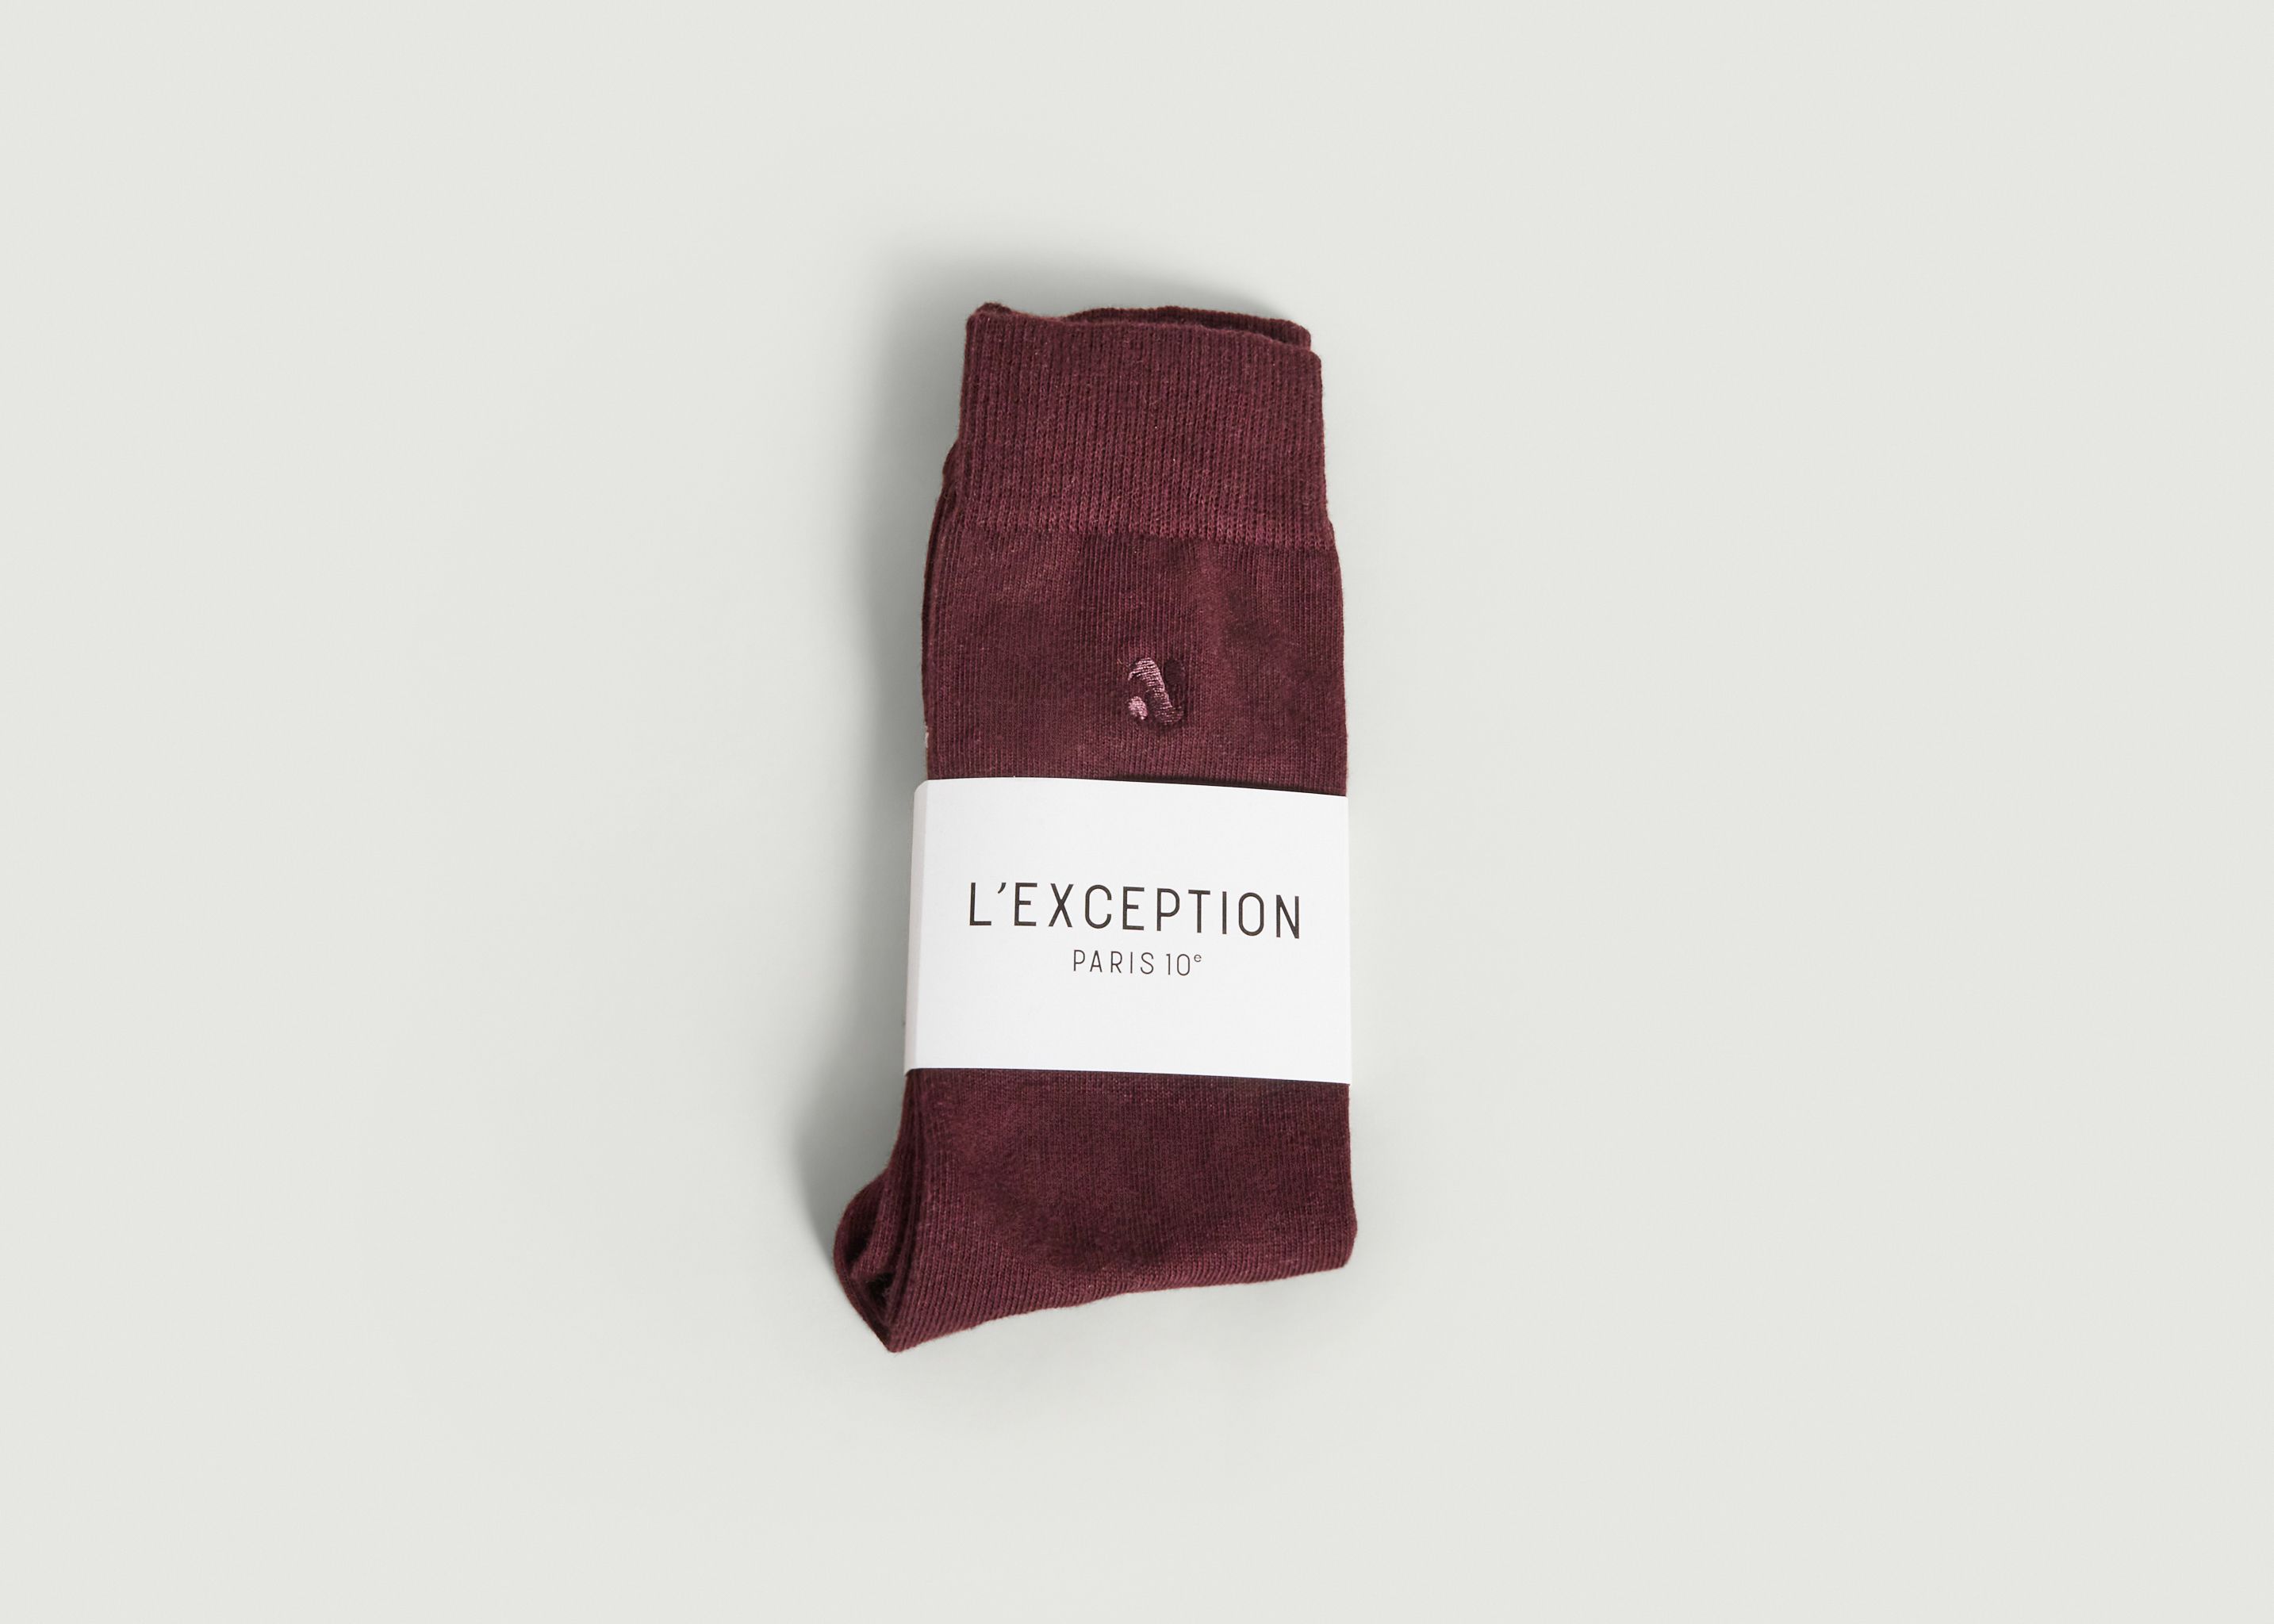 Bestickte Socken - L'Exception Paris